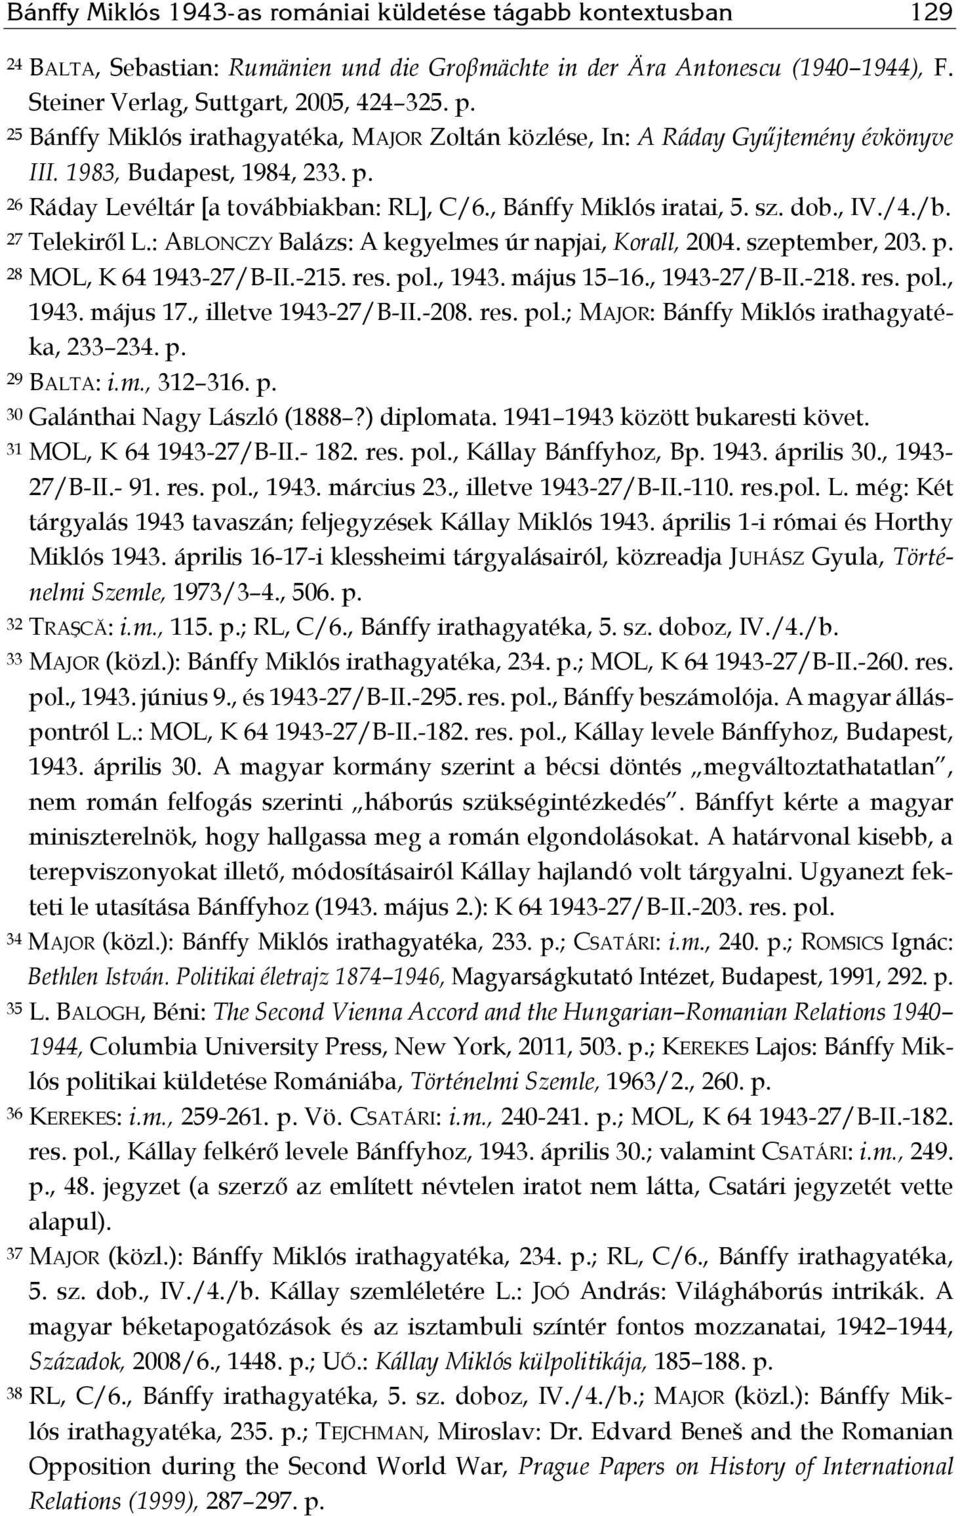 , IV./4./b. 27 Telekiről L.: ABLONCZY Balázs: A kegyelmes úr napjai, Korall, 2004. szeptember, 203. p. 28 MOL, K 64 1943-27/B-II.-215. res. pol., 1943. május 15 16., 1943-27/B-II.-218. res. pol., 1943. május 17.